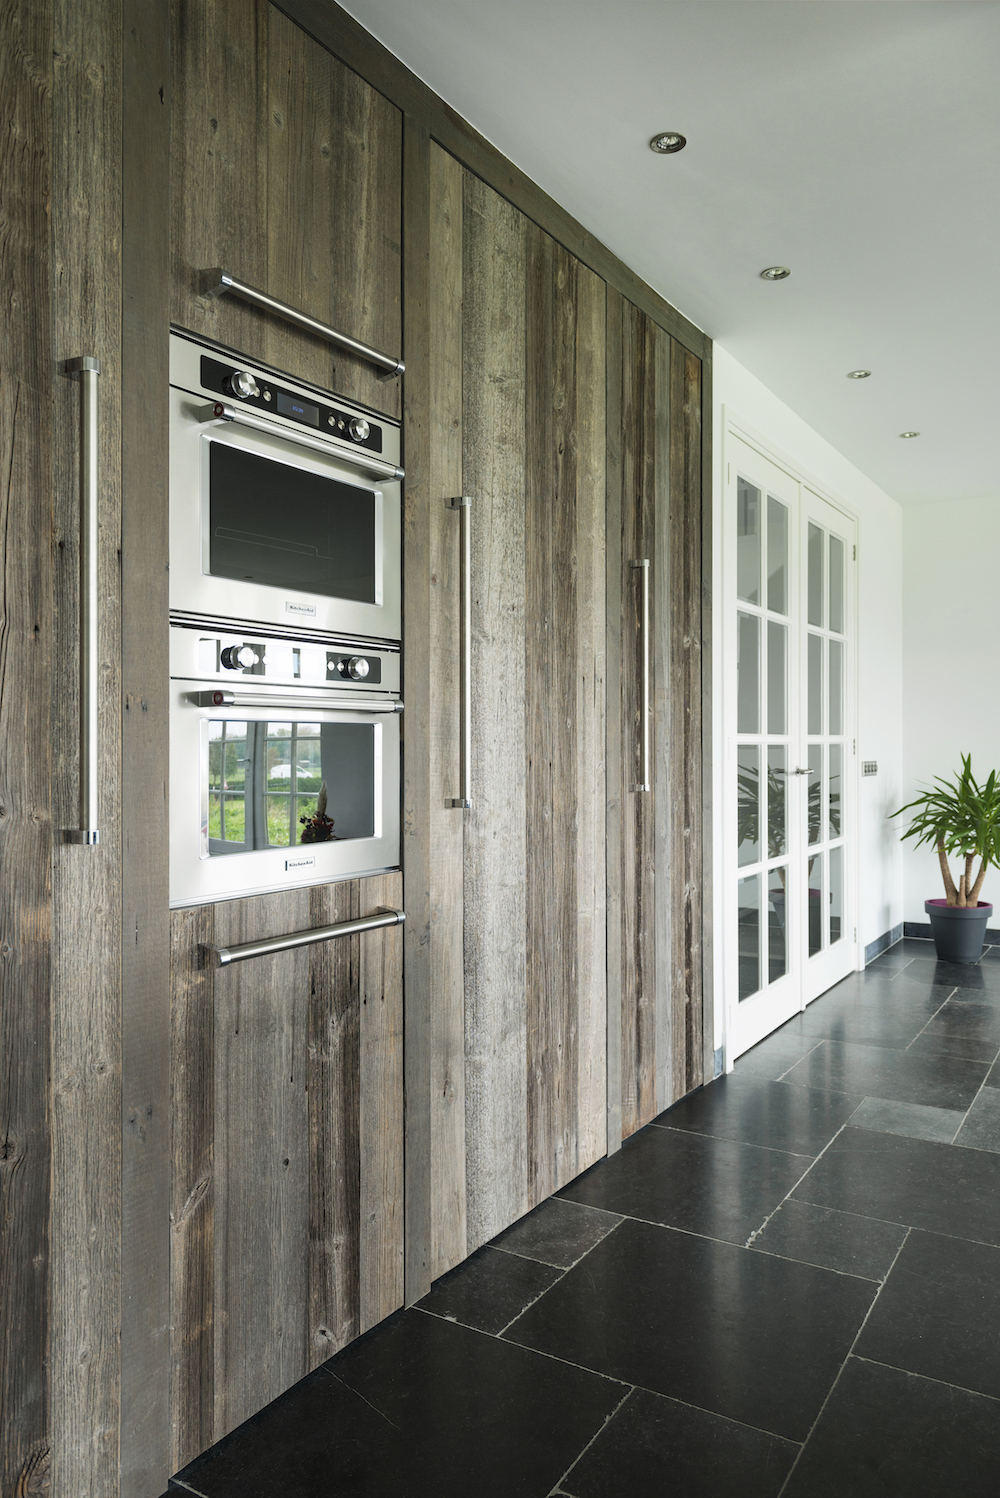 Houten keuken van RestyleXL met hoge houten kastenwand, inbouwapparatuur van KitchenAid inbouwapparatuur #restylexl #houtenkeuken #keuken #kitchenaid